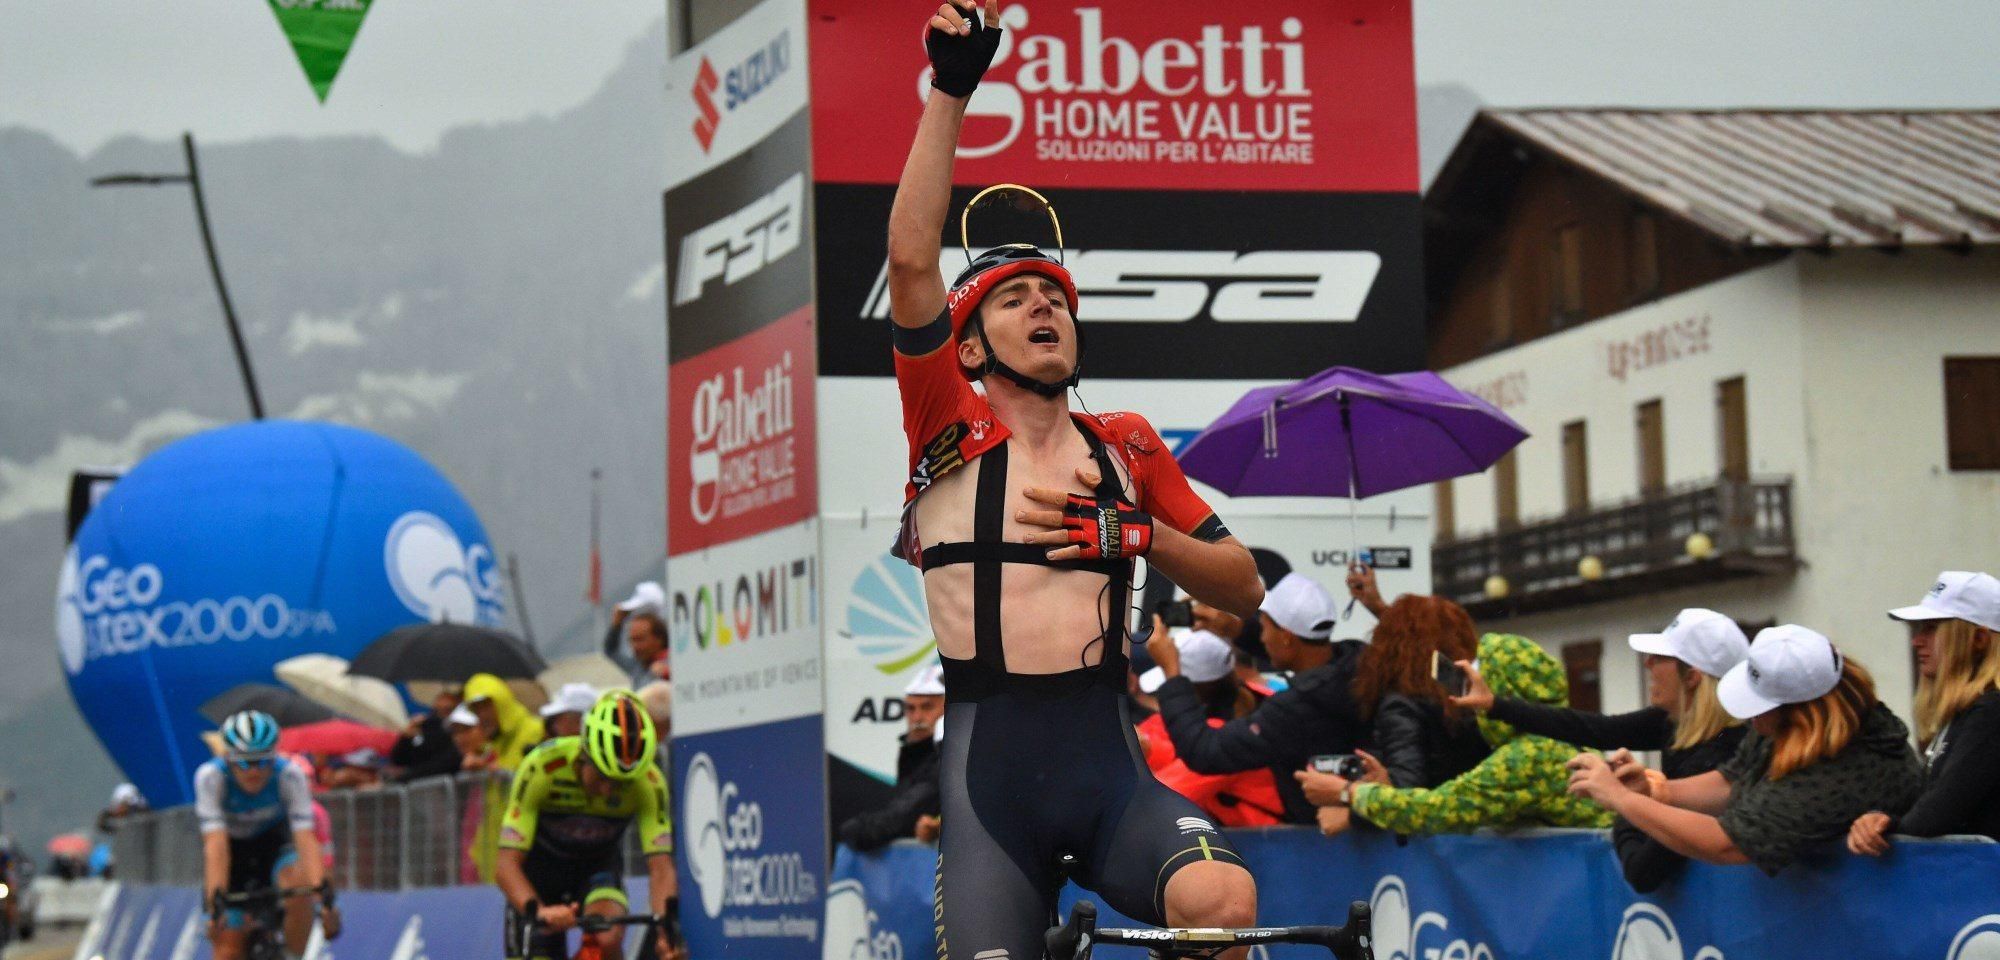 Украинский велогонщик Падун одержал громкую победу на престижных соревнованиях в Италии